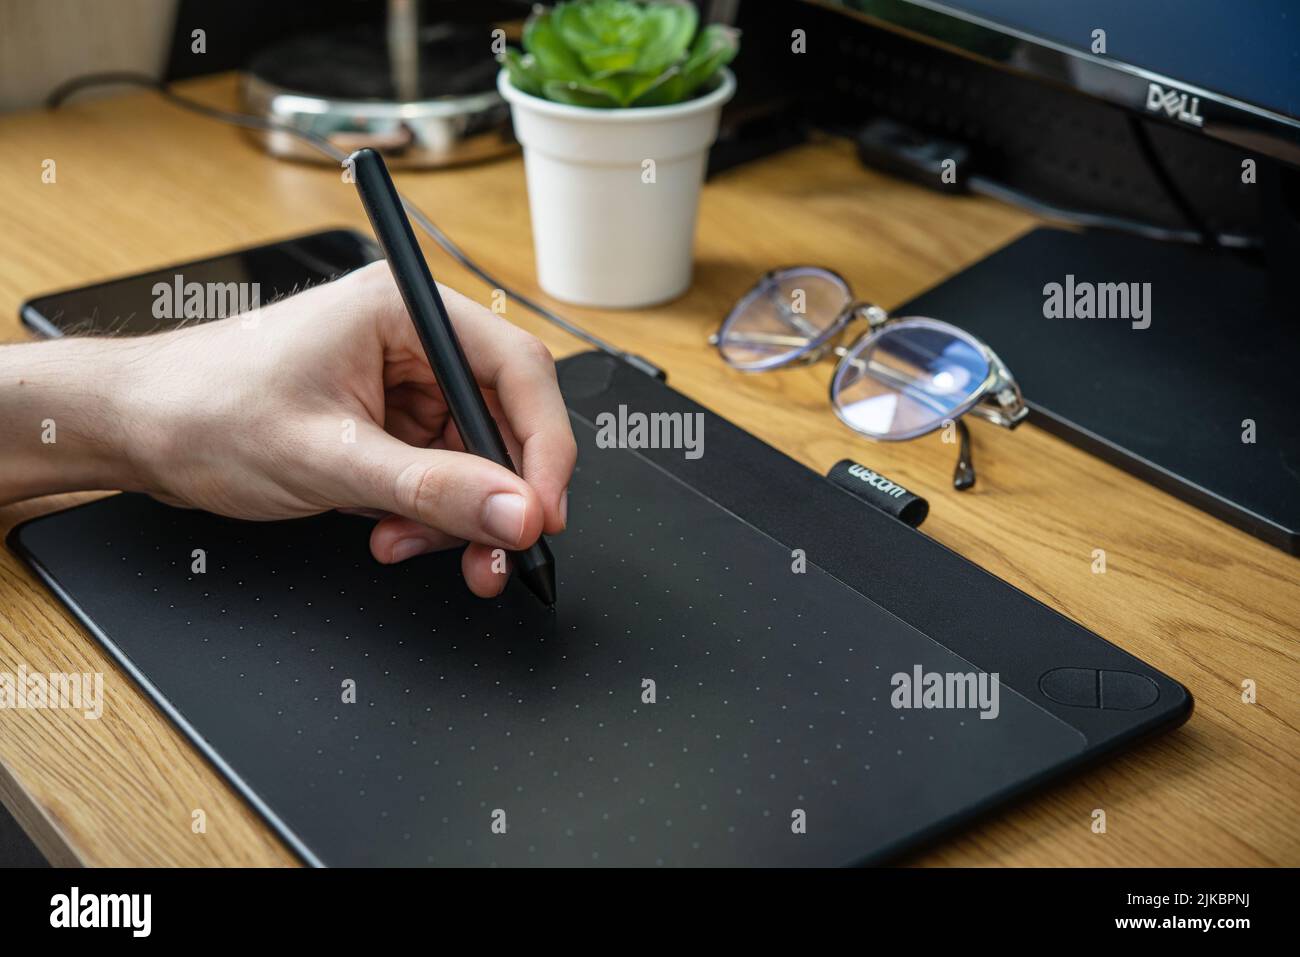 KIEV, UKRAINE - 21 DÉCEMBRE 2021: Jeune graphiste homme utilisant la tablette graphique Wacom sur table noire à la maison de bureau de fermer. Banque D'Images